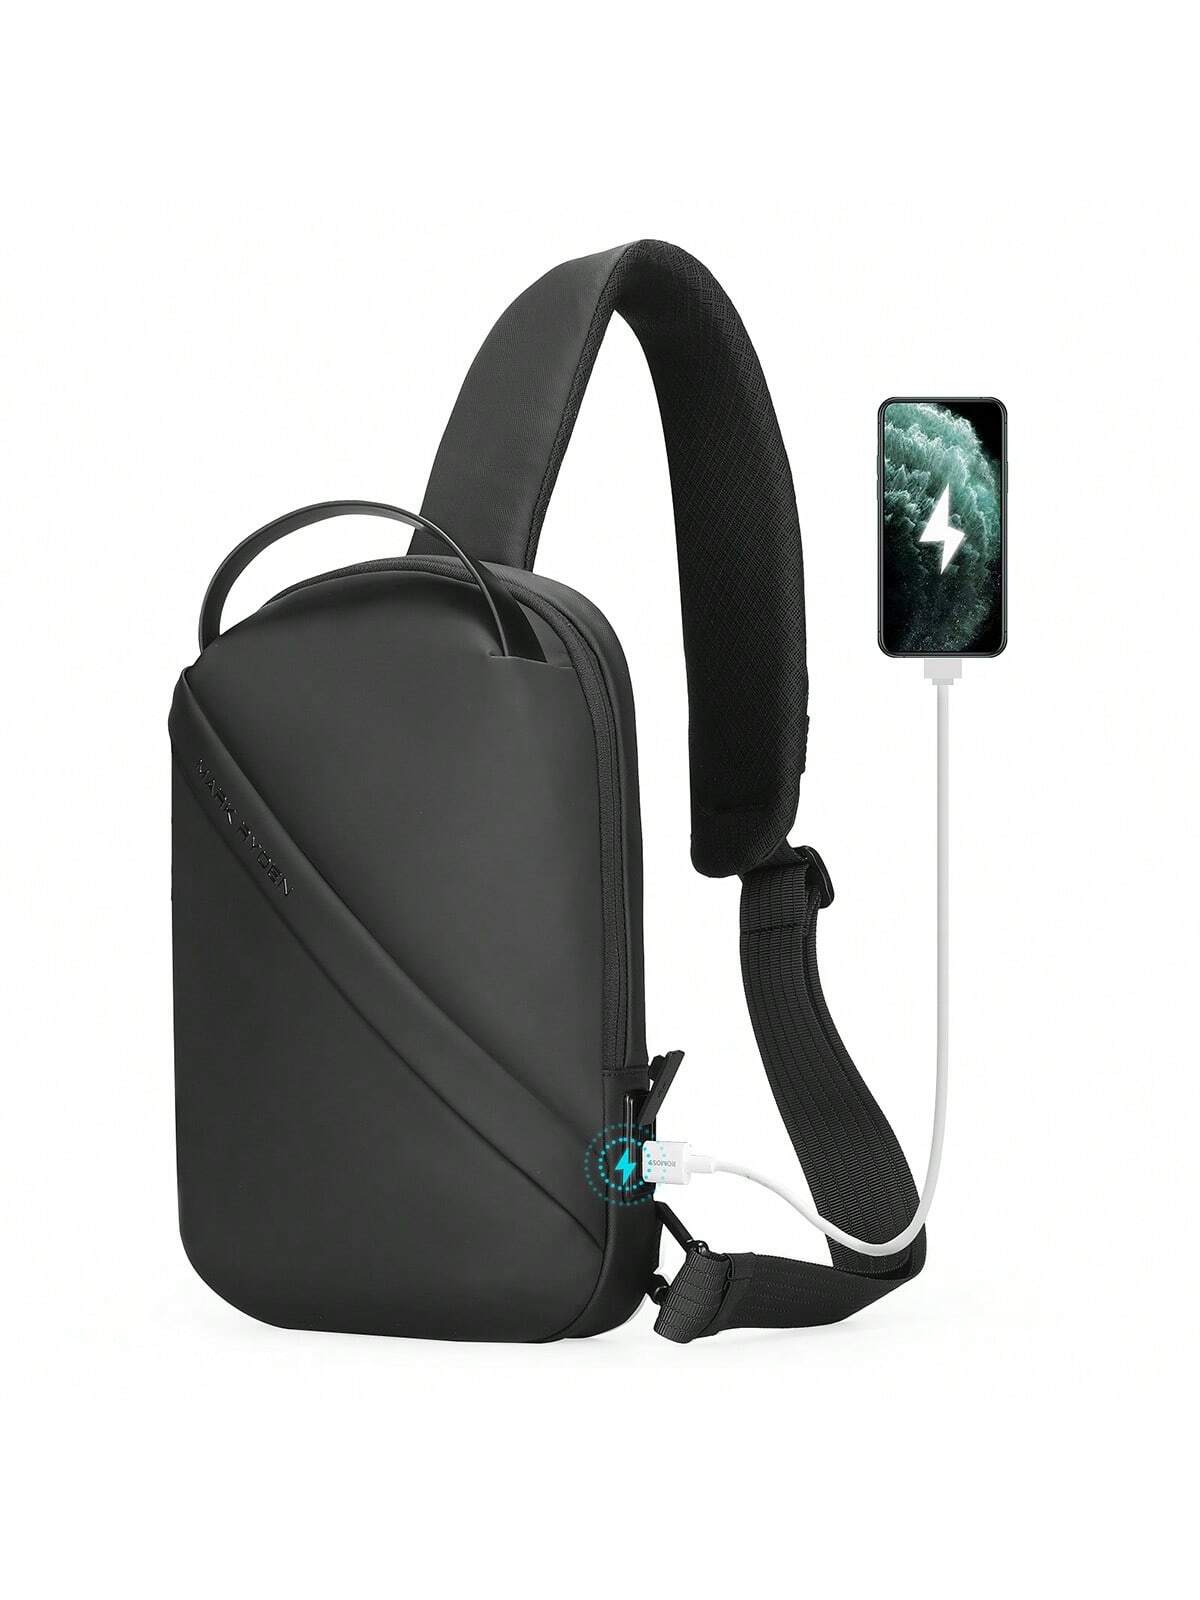 мужская нагрудная сумка через плечо вместительная сумка через плечо для пешего туризма кемпинга MARK RYDEN сумка через плечо, черное обновление